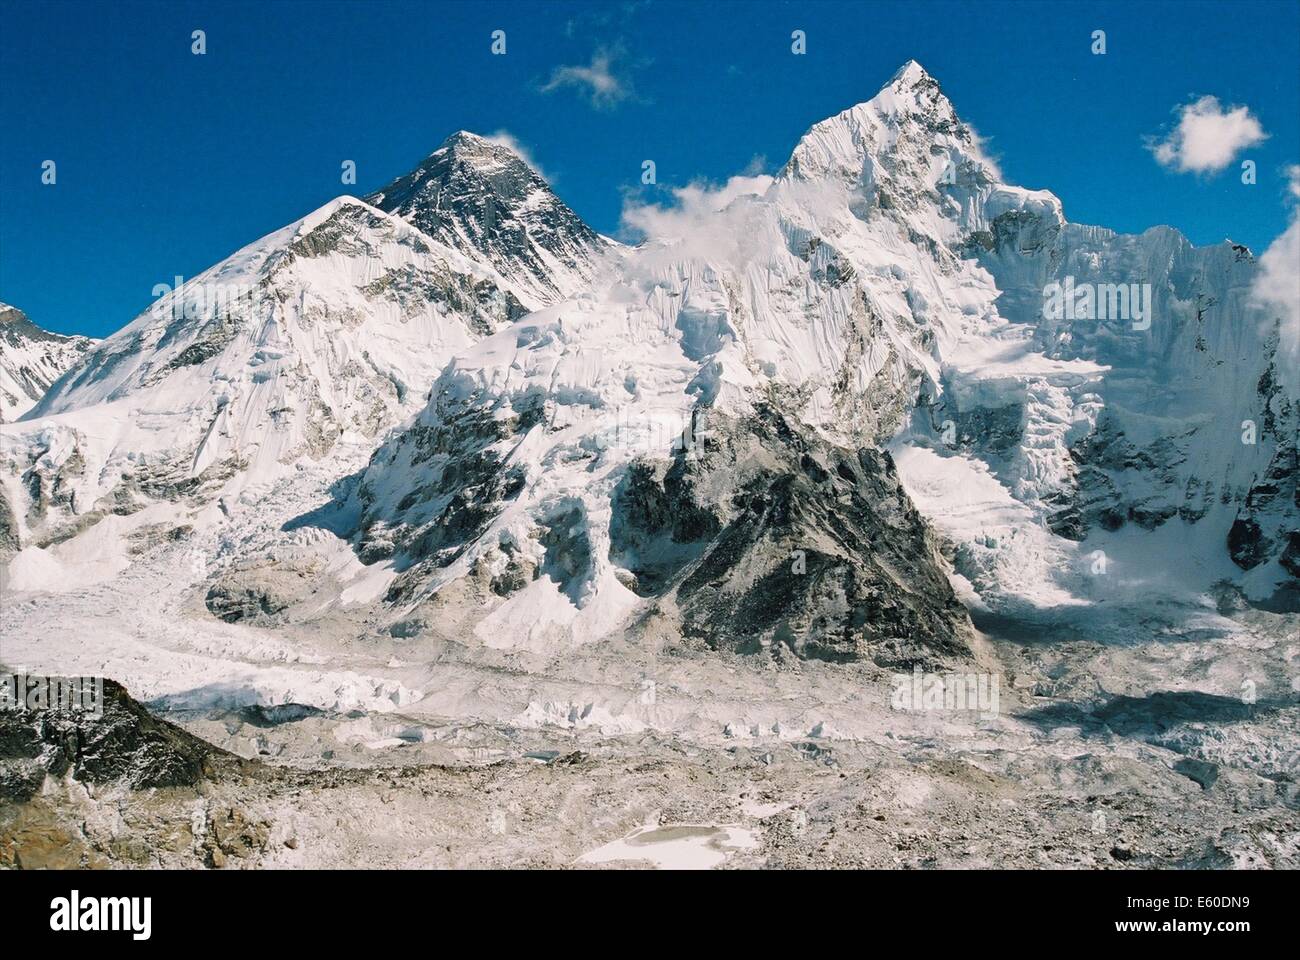 El monte Everest, el pico más alto del mundo a 8885 msnm, visto desde el valle de Khumbu, Nepal Himalaya Foto de stock